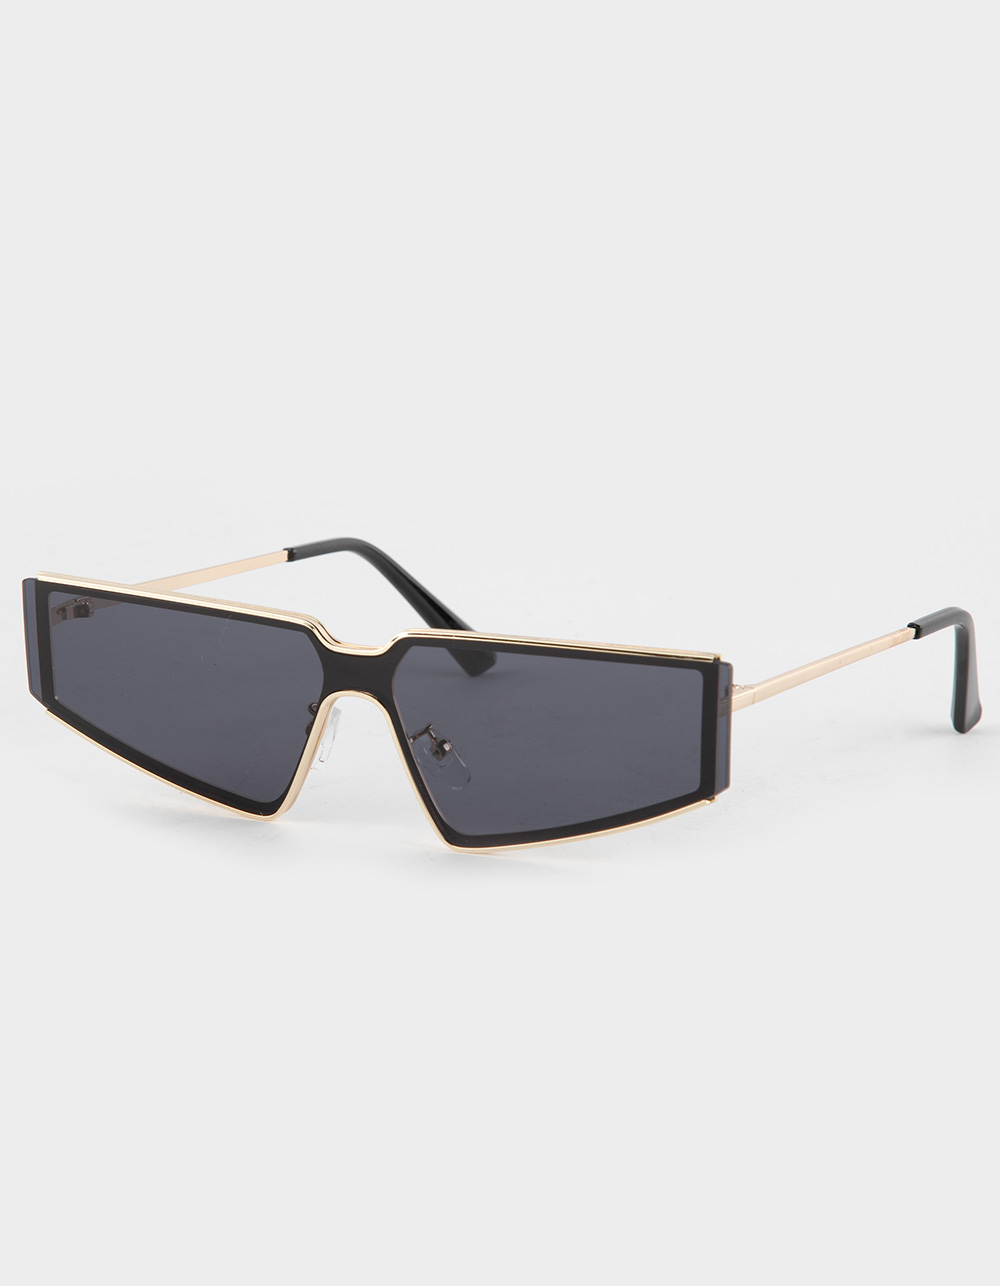 RSQ Futuristic Sunglasses